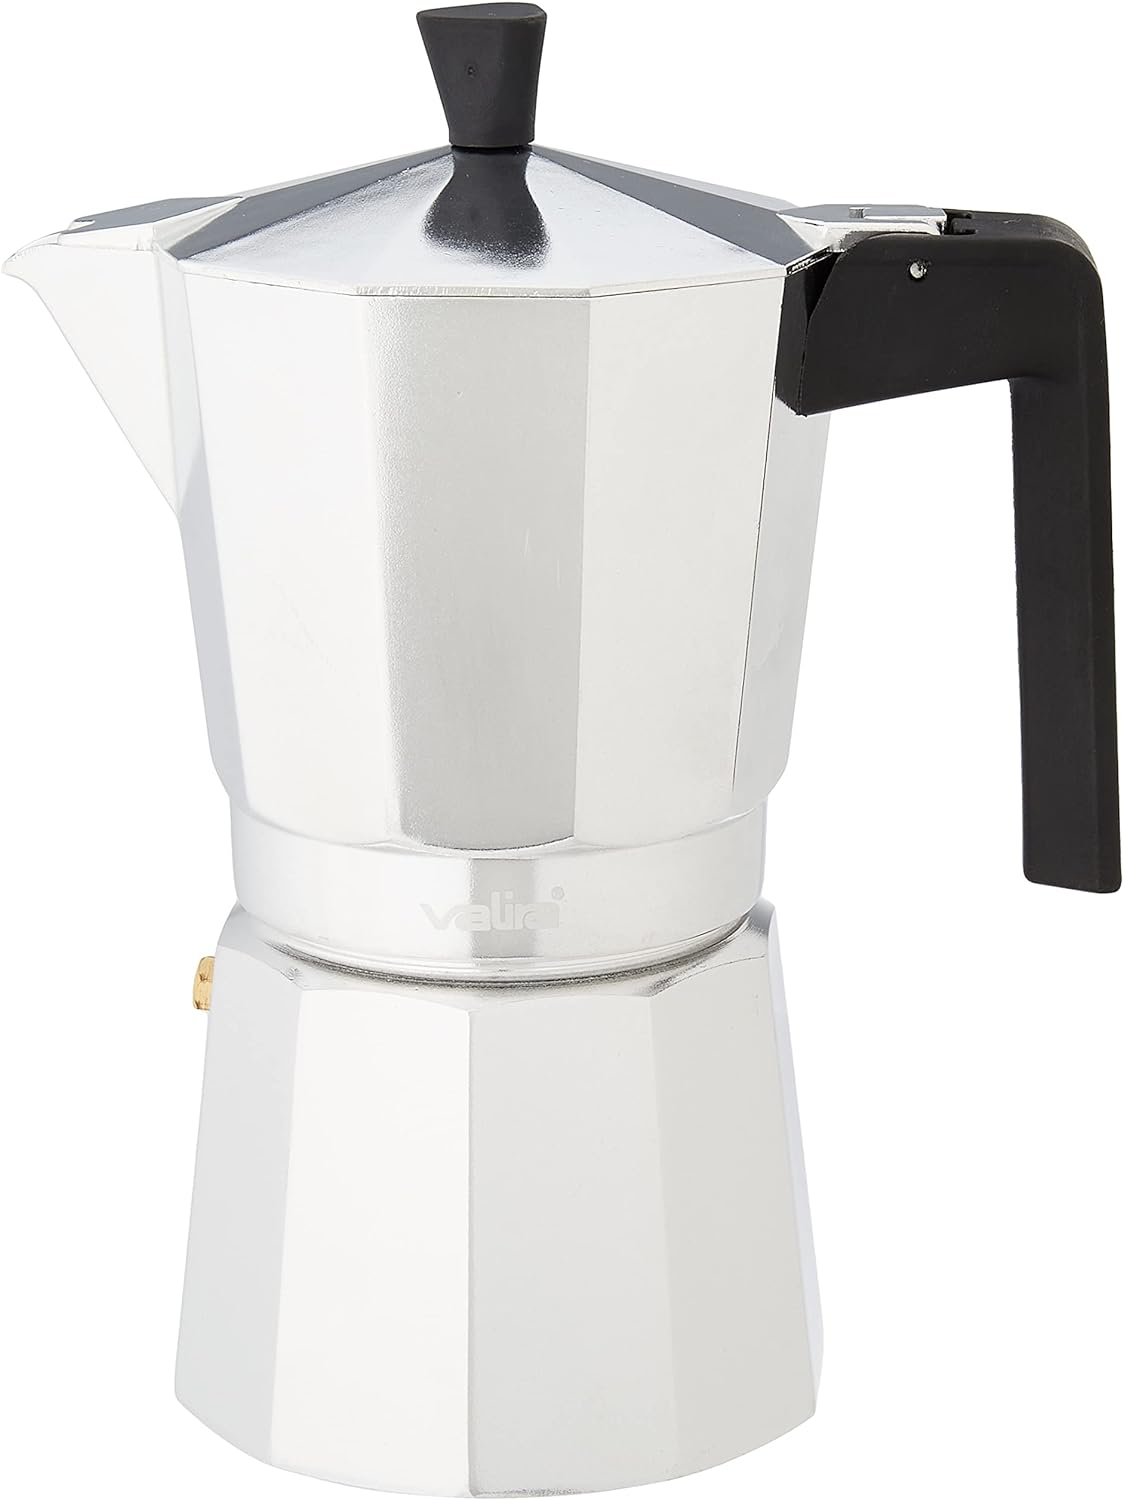 Valira 3109 Alu espresso maker 9 cups vitro